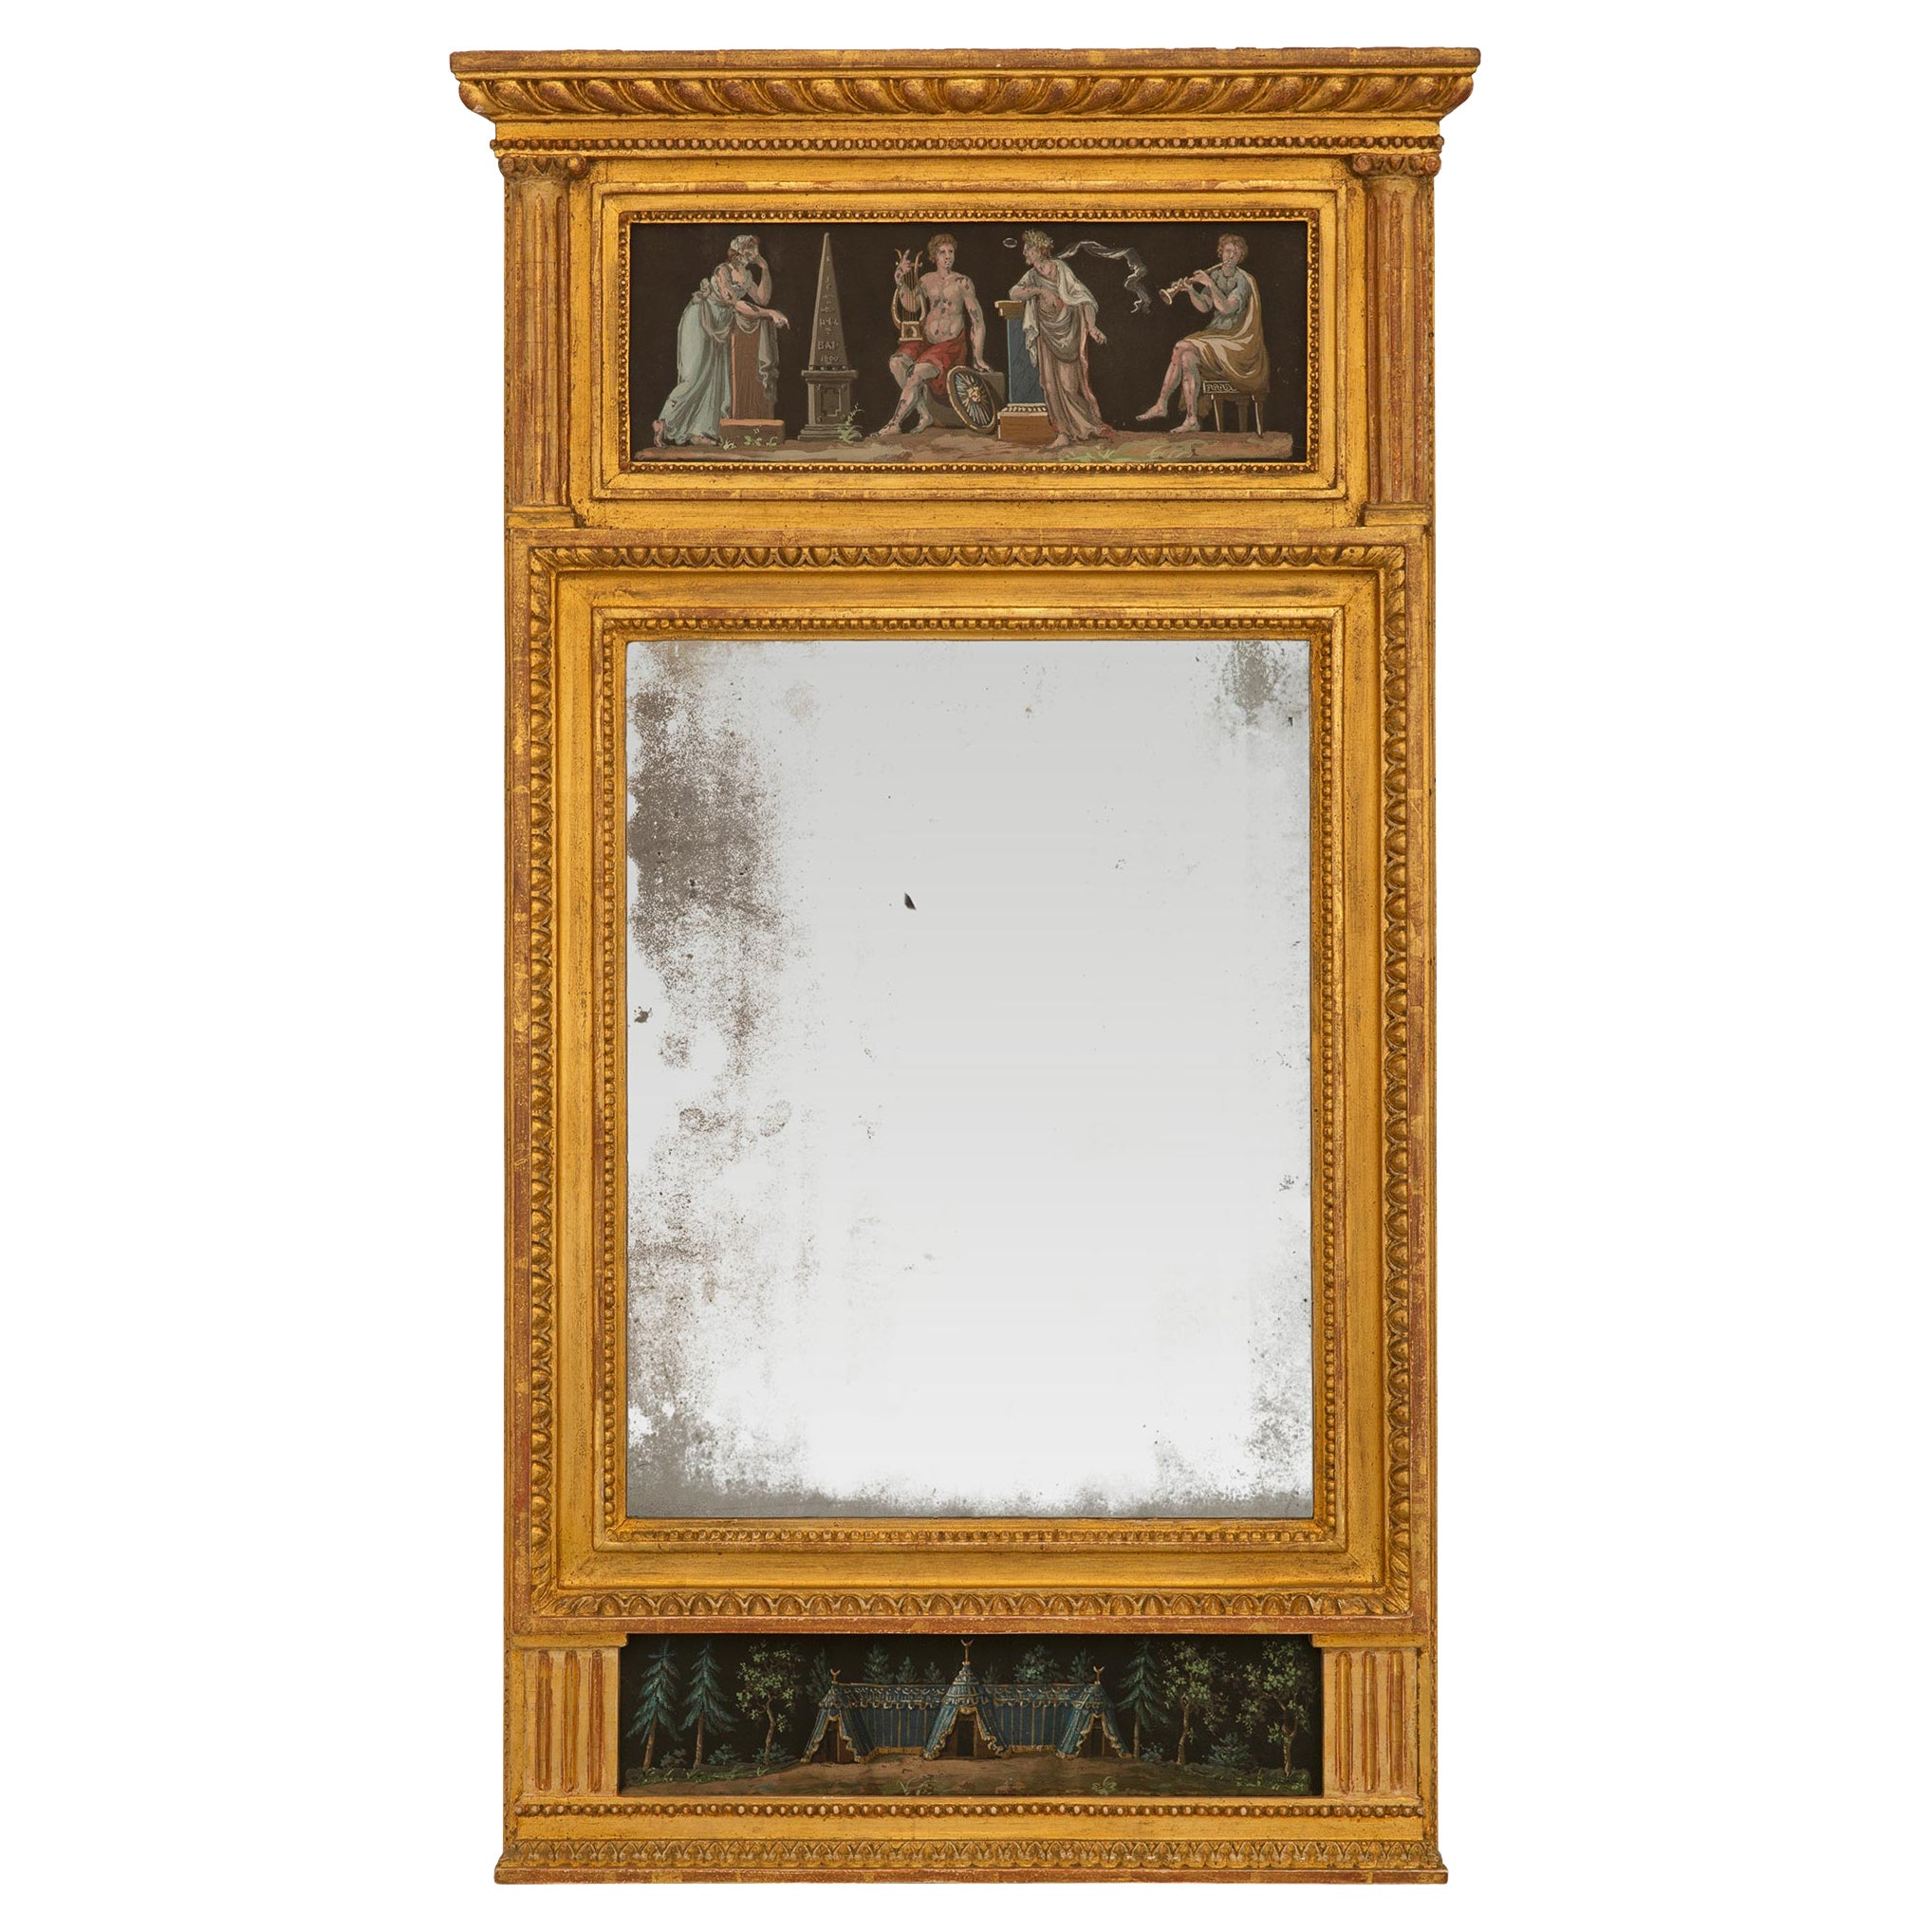 Miroir Trumeau en bois doré et gouache de style néo-classique italien du début du 19ème siècle